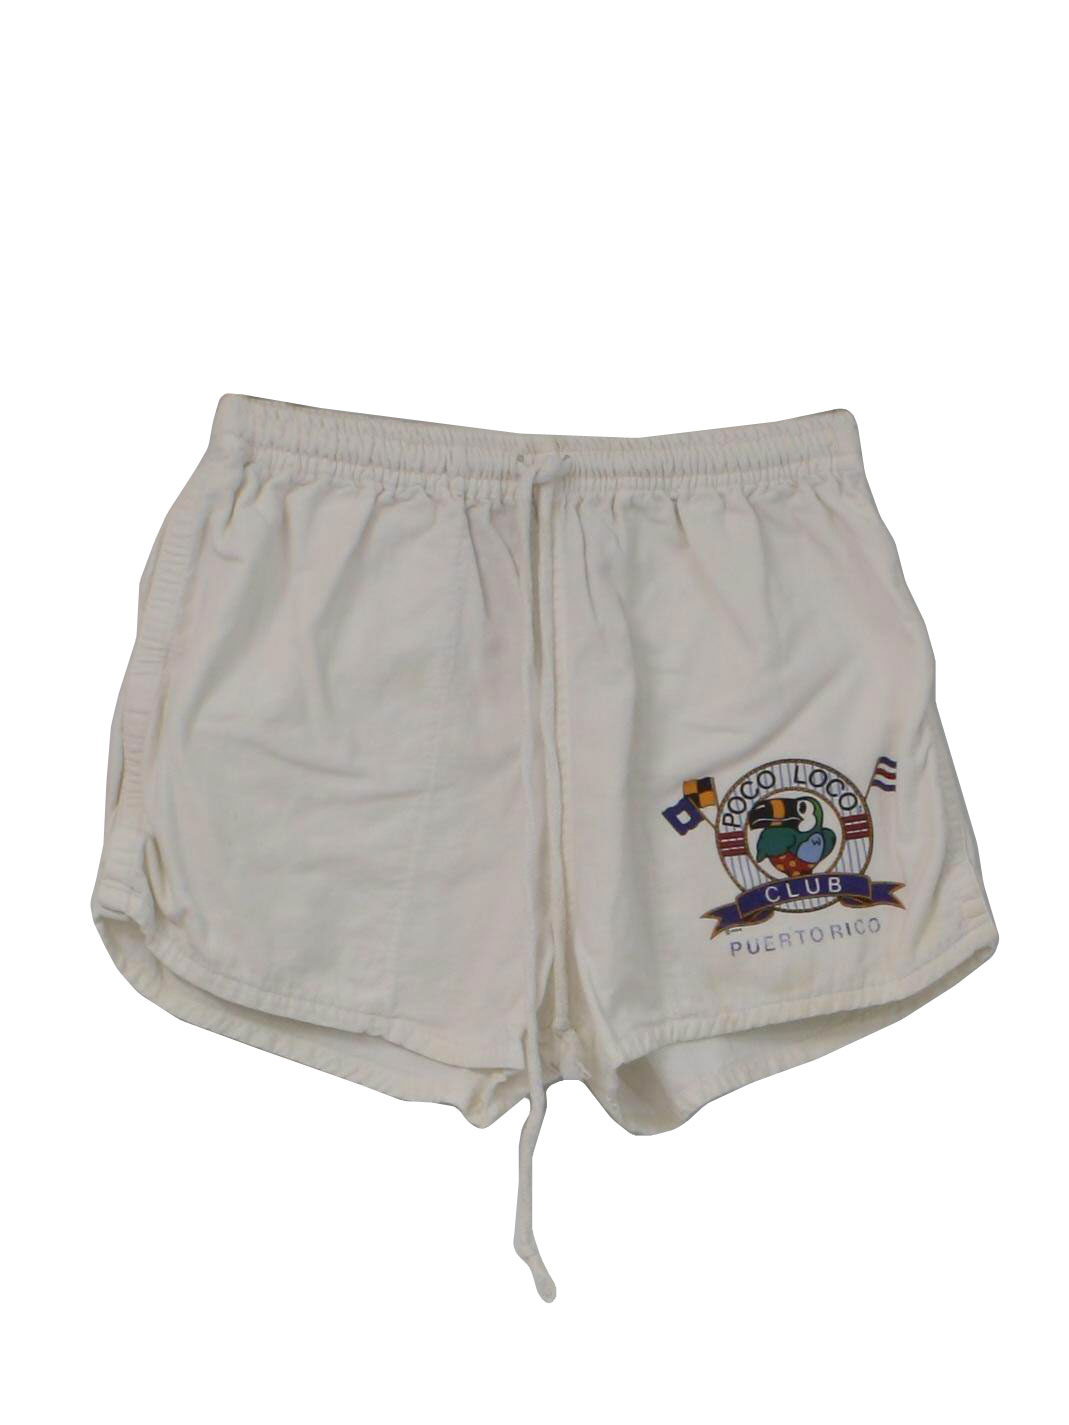 80's Poco Loco Shorts: 80s -Poco Loco- Mens white background cotton ...